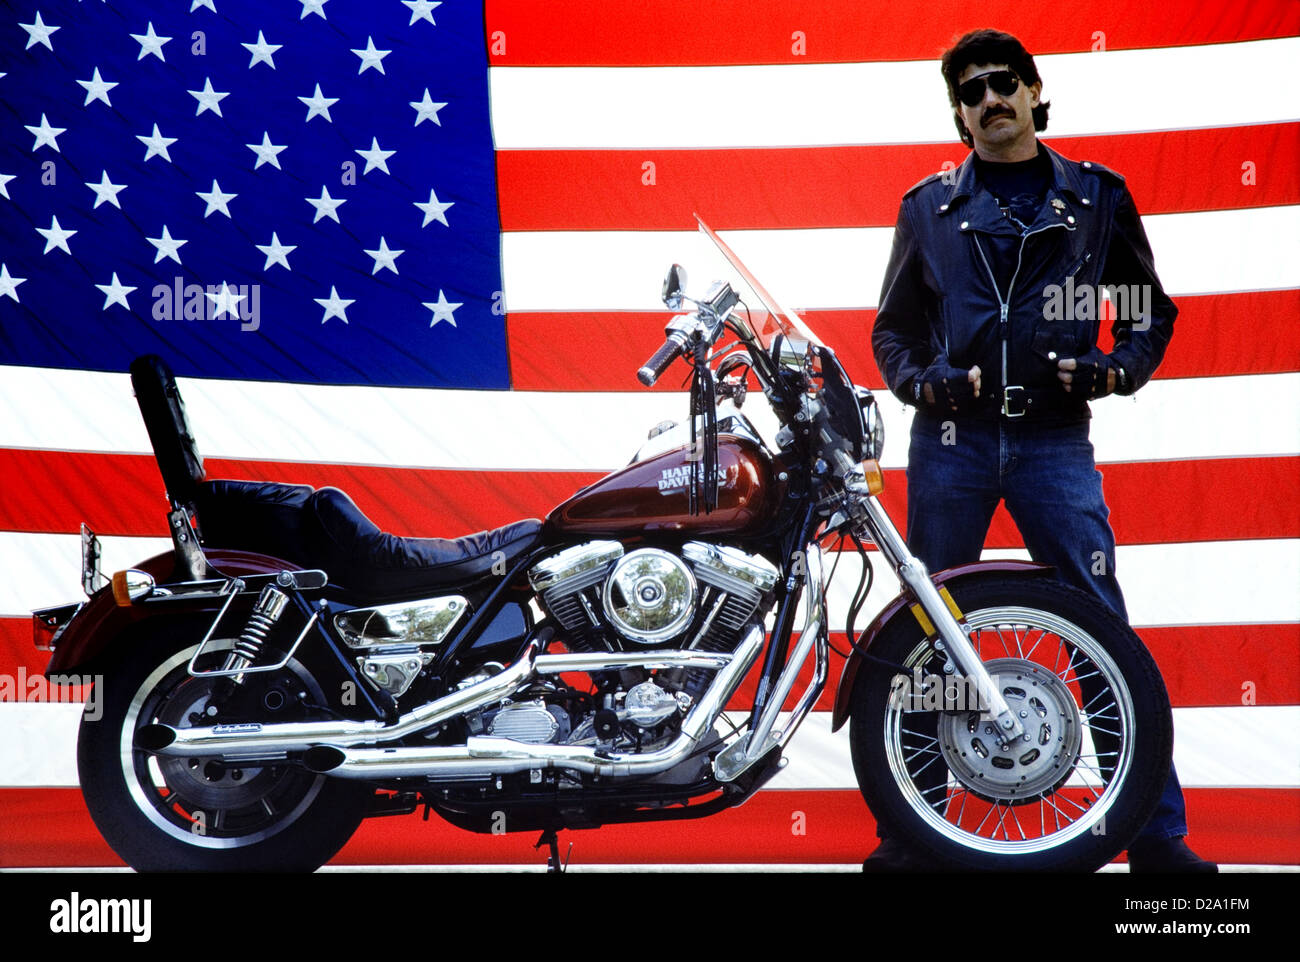 Homme pilote moto avec moto Harley Davidson et drapeau Américain Banque D'Images